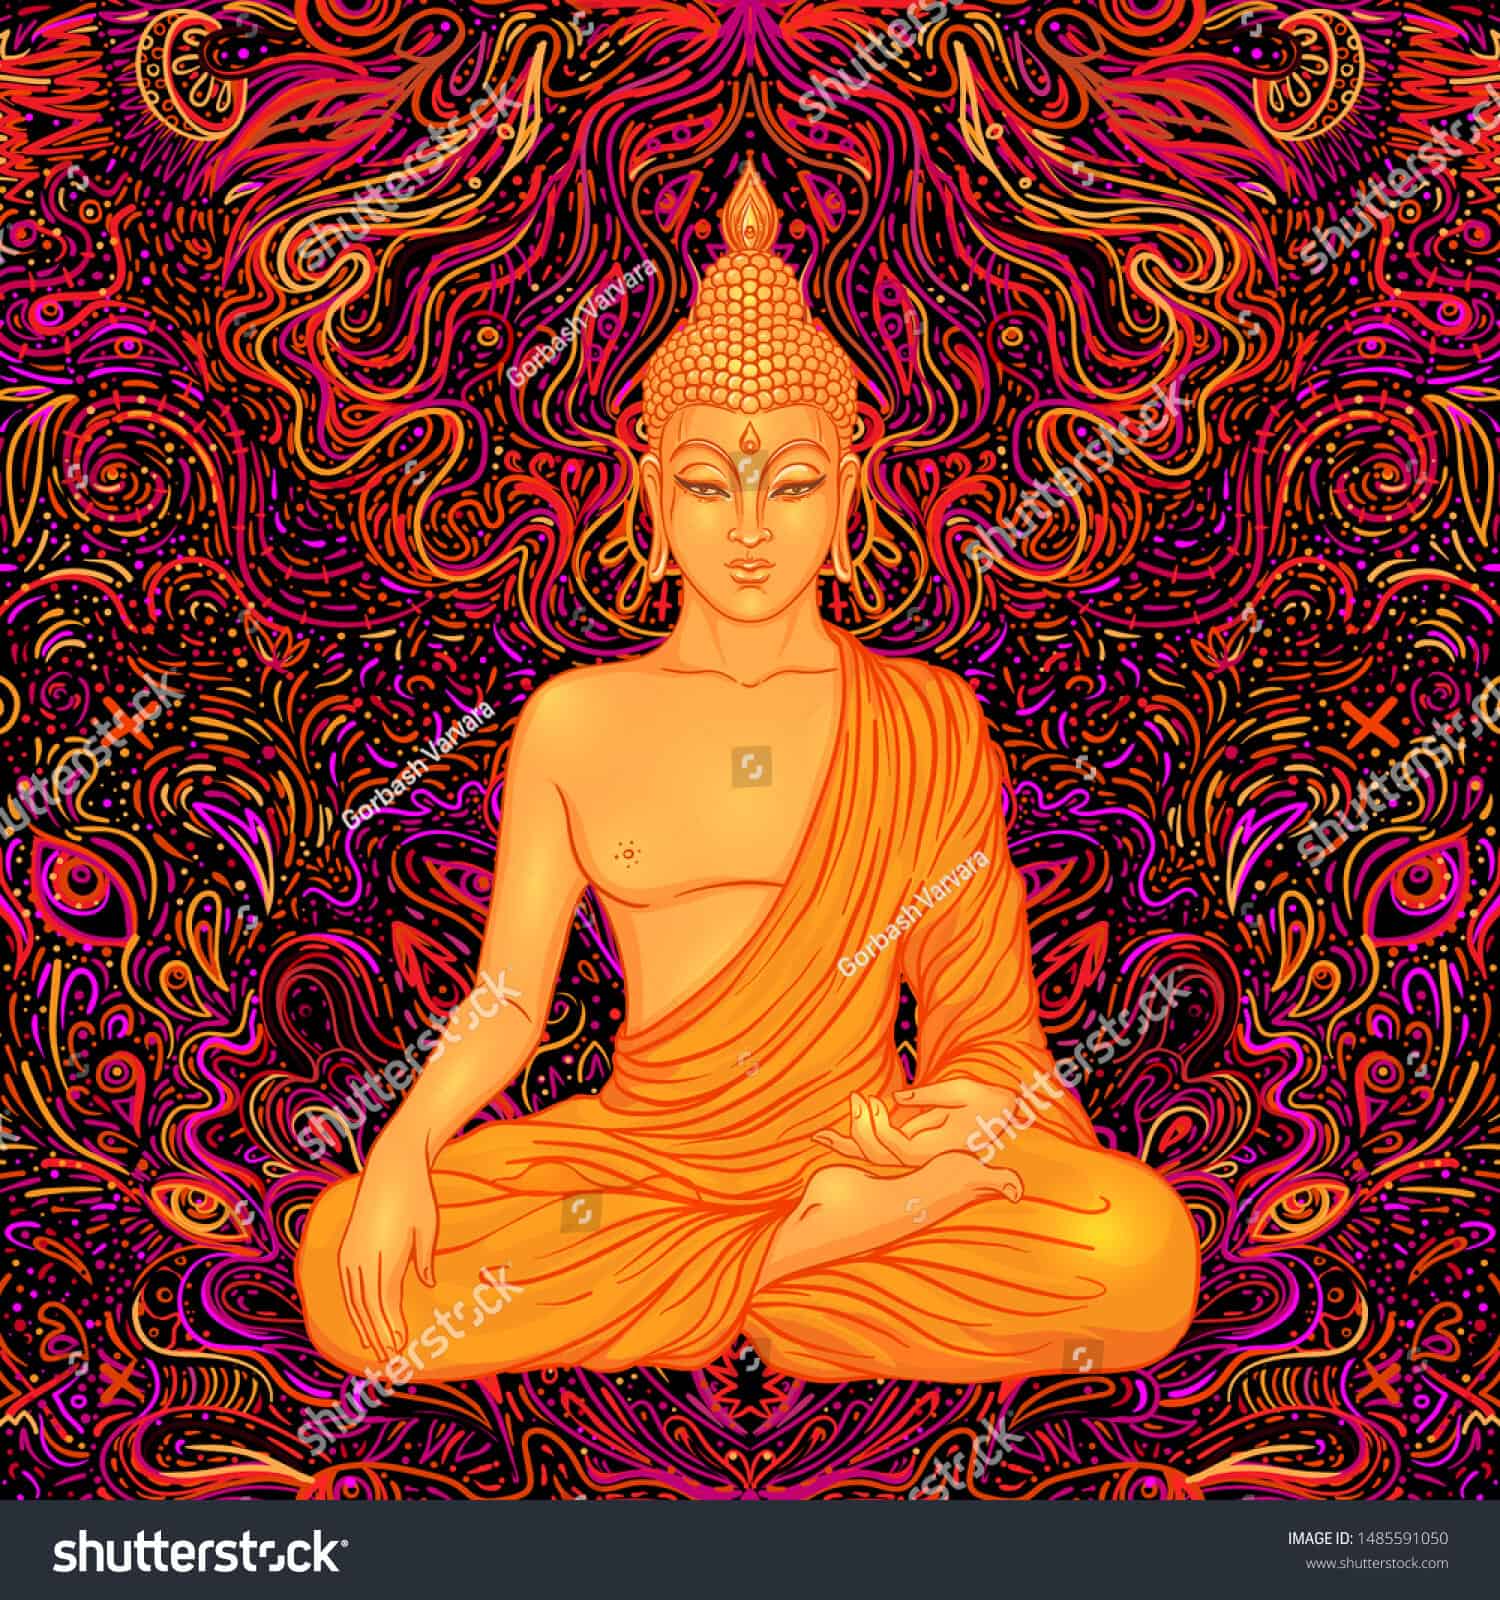 Hình ảnh Phật giáo chất lượng cao sẽ khiến bạn cảm thấy như đang đắm mình trong một không gian tôn giáo tuyệt vời. Những bức ảnh tuyệt đẹp này đã tái hiện lại một cách chân thực màu sắc và nét đẹp của những tàn hoa, những nét khuôn mặt truyền thống. Bạn có thể tận hưởng cảm giác yên bình qua những bức ảnh chất lượng cao này.